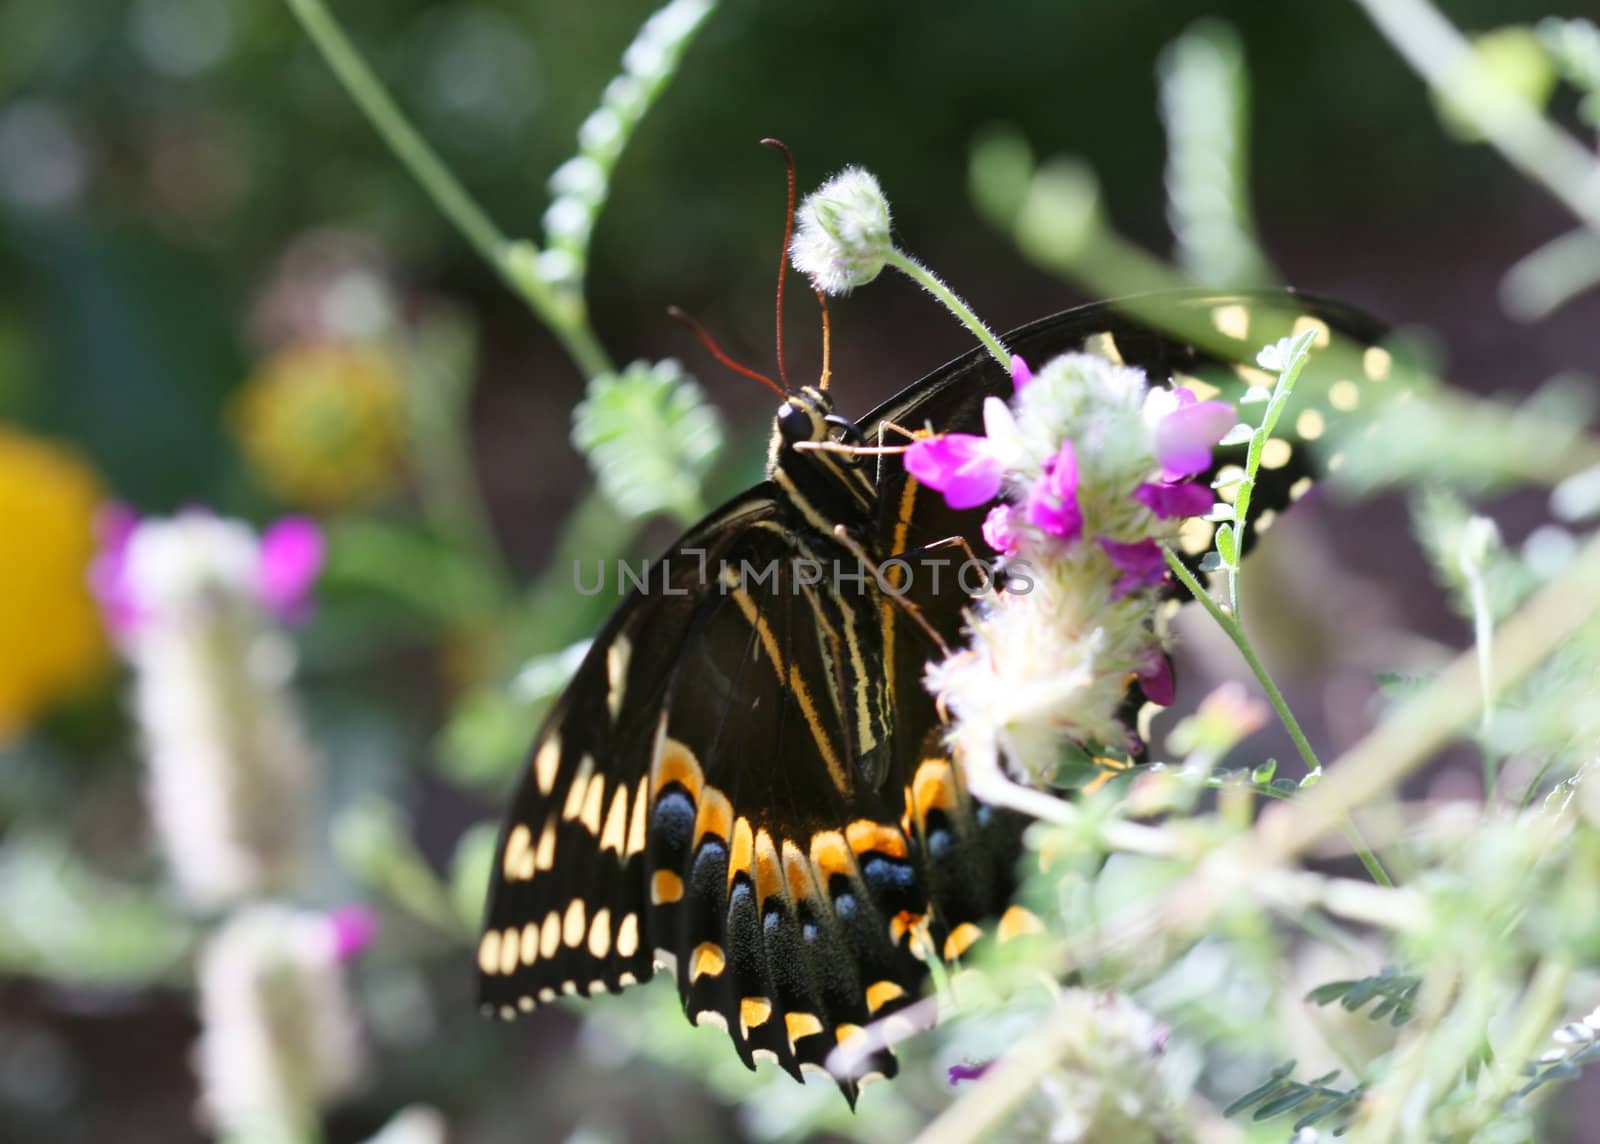  buckeye butterfly by deserttrends